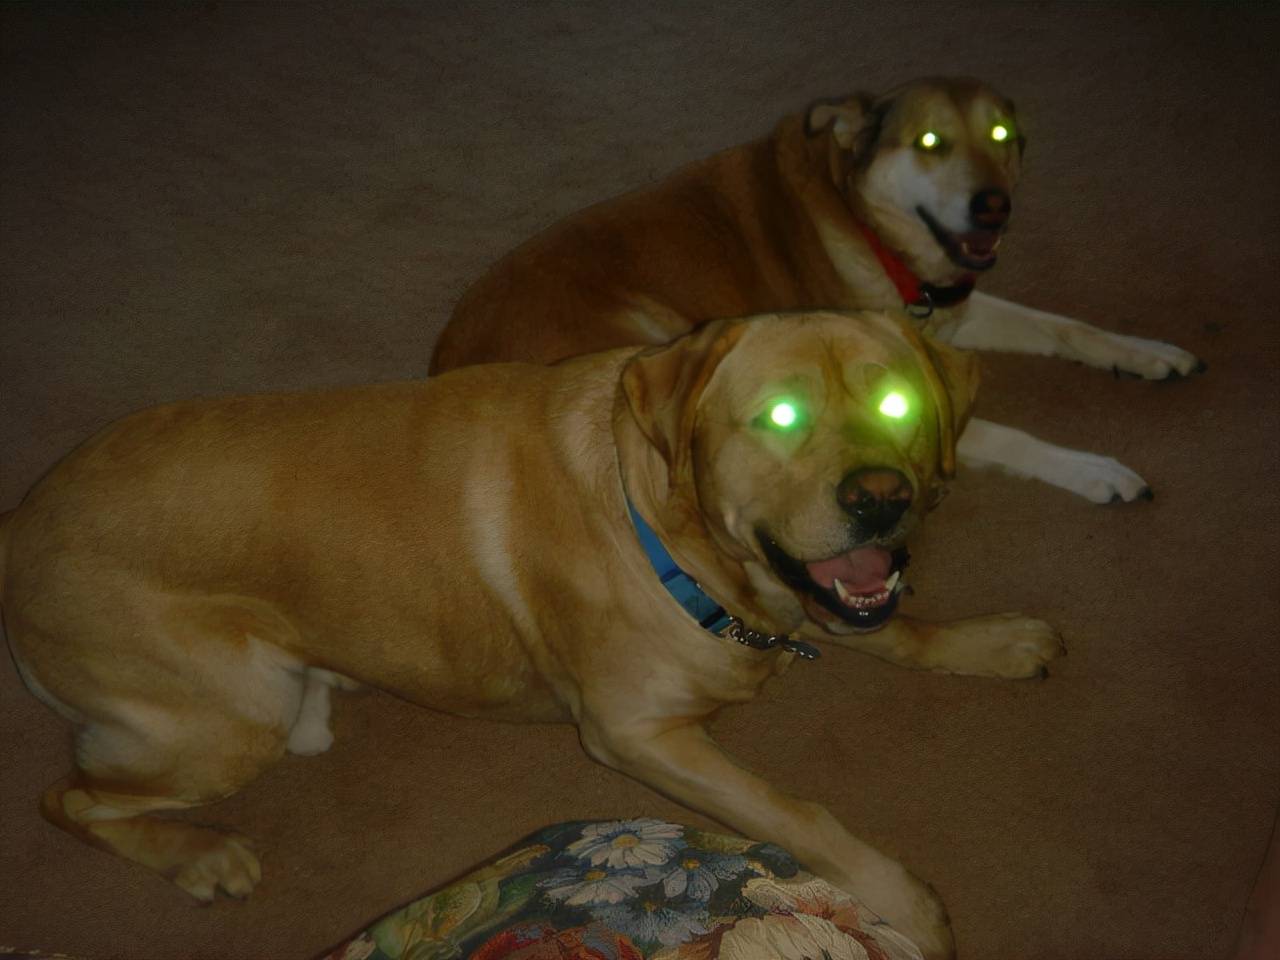 灯光照射狗眼睛后发出绿光也正因如此,当强光照射狗的眼睛时,我们会